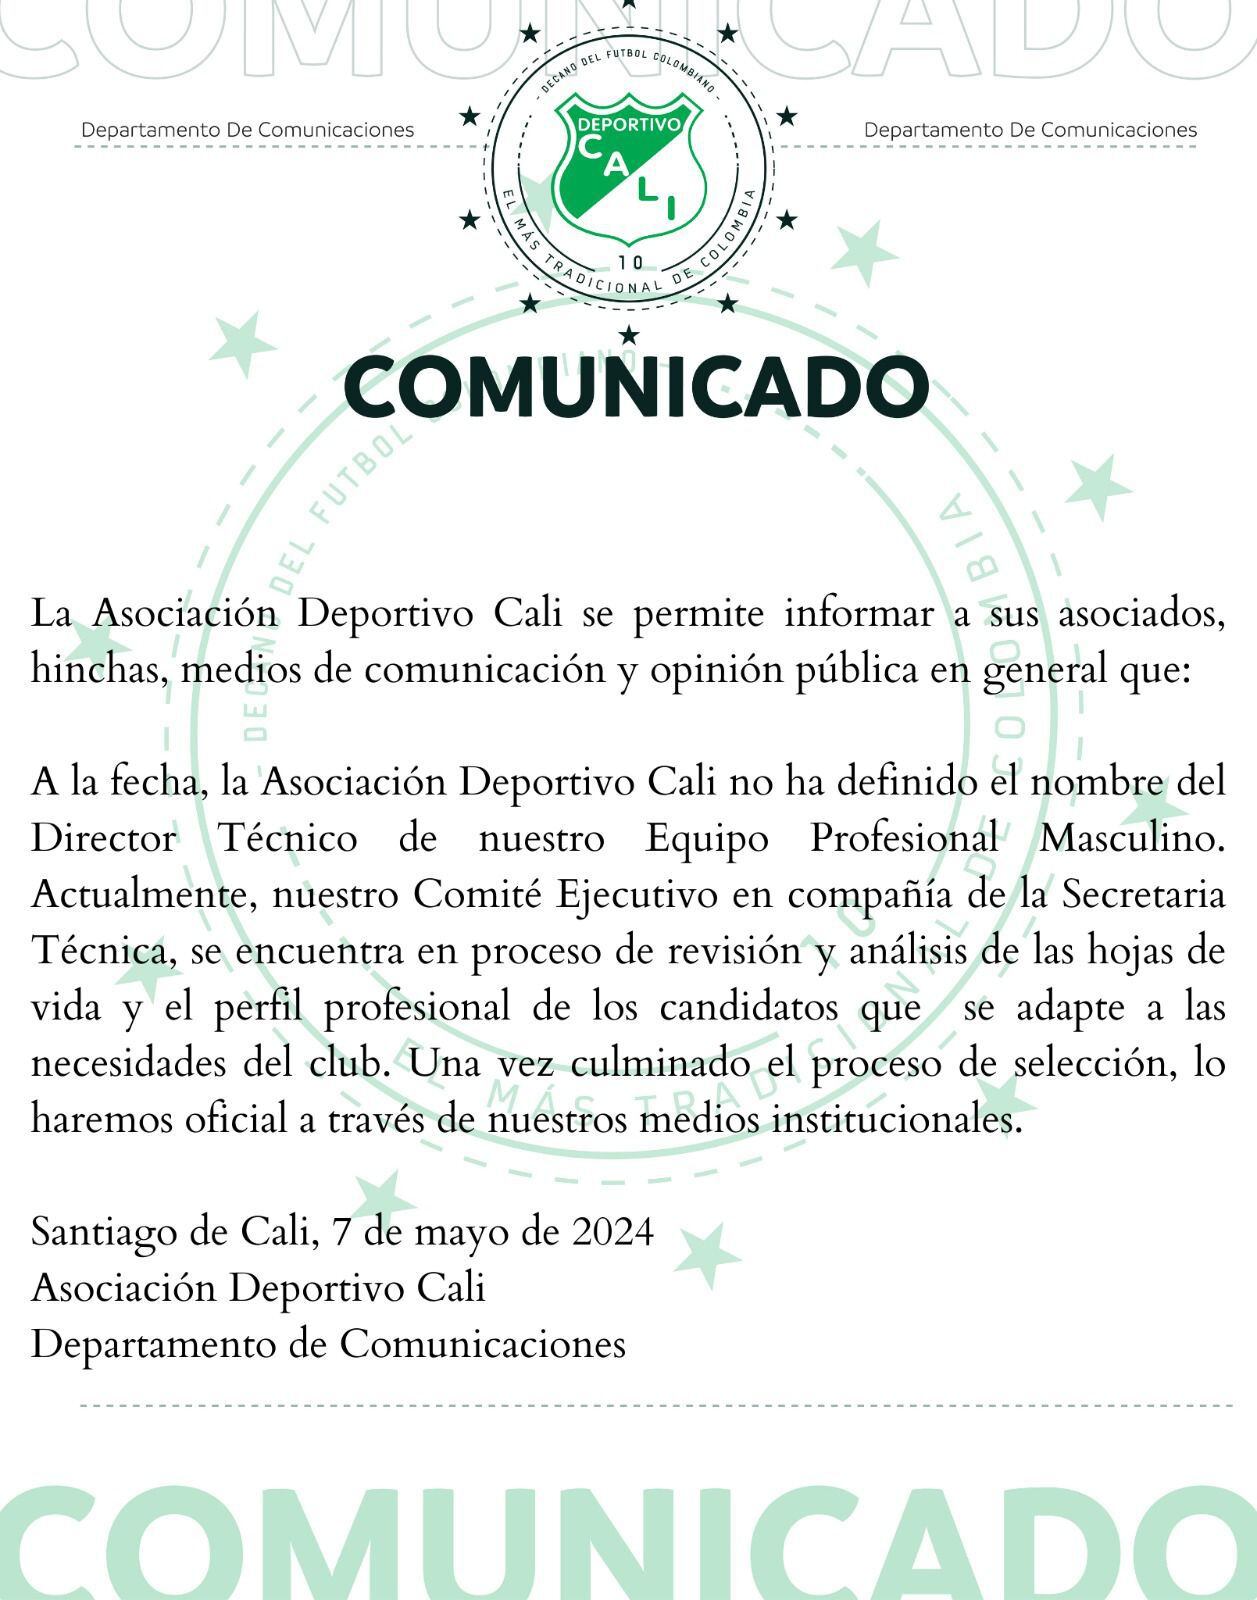 Comunicado oficial del Deportivo Cali donde aclara la situación del técnico.